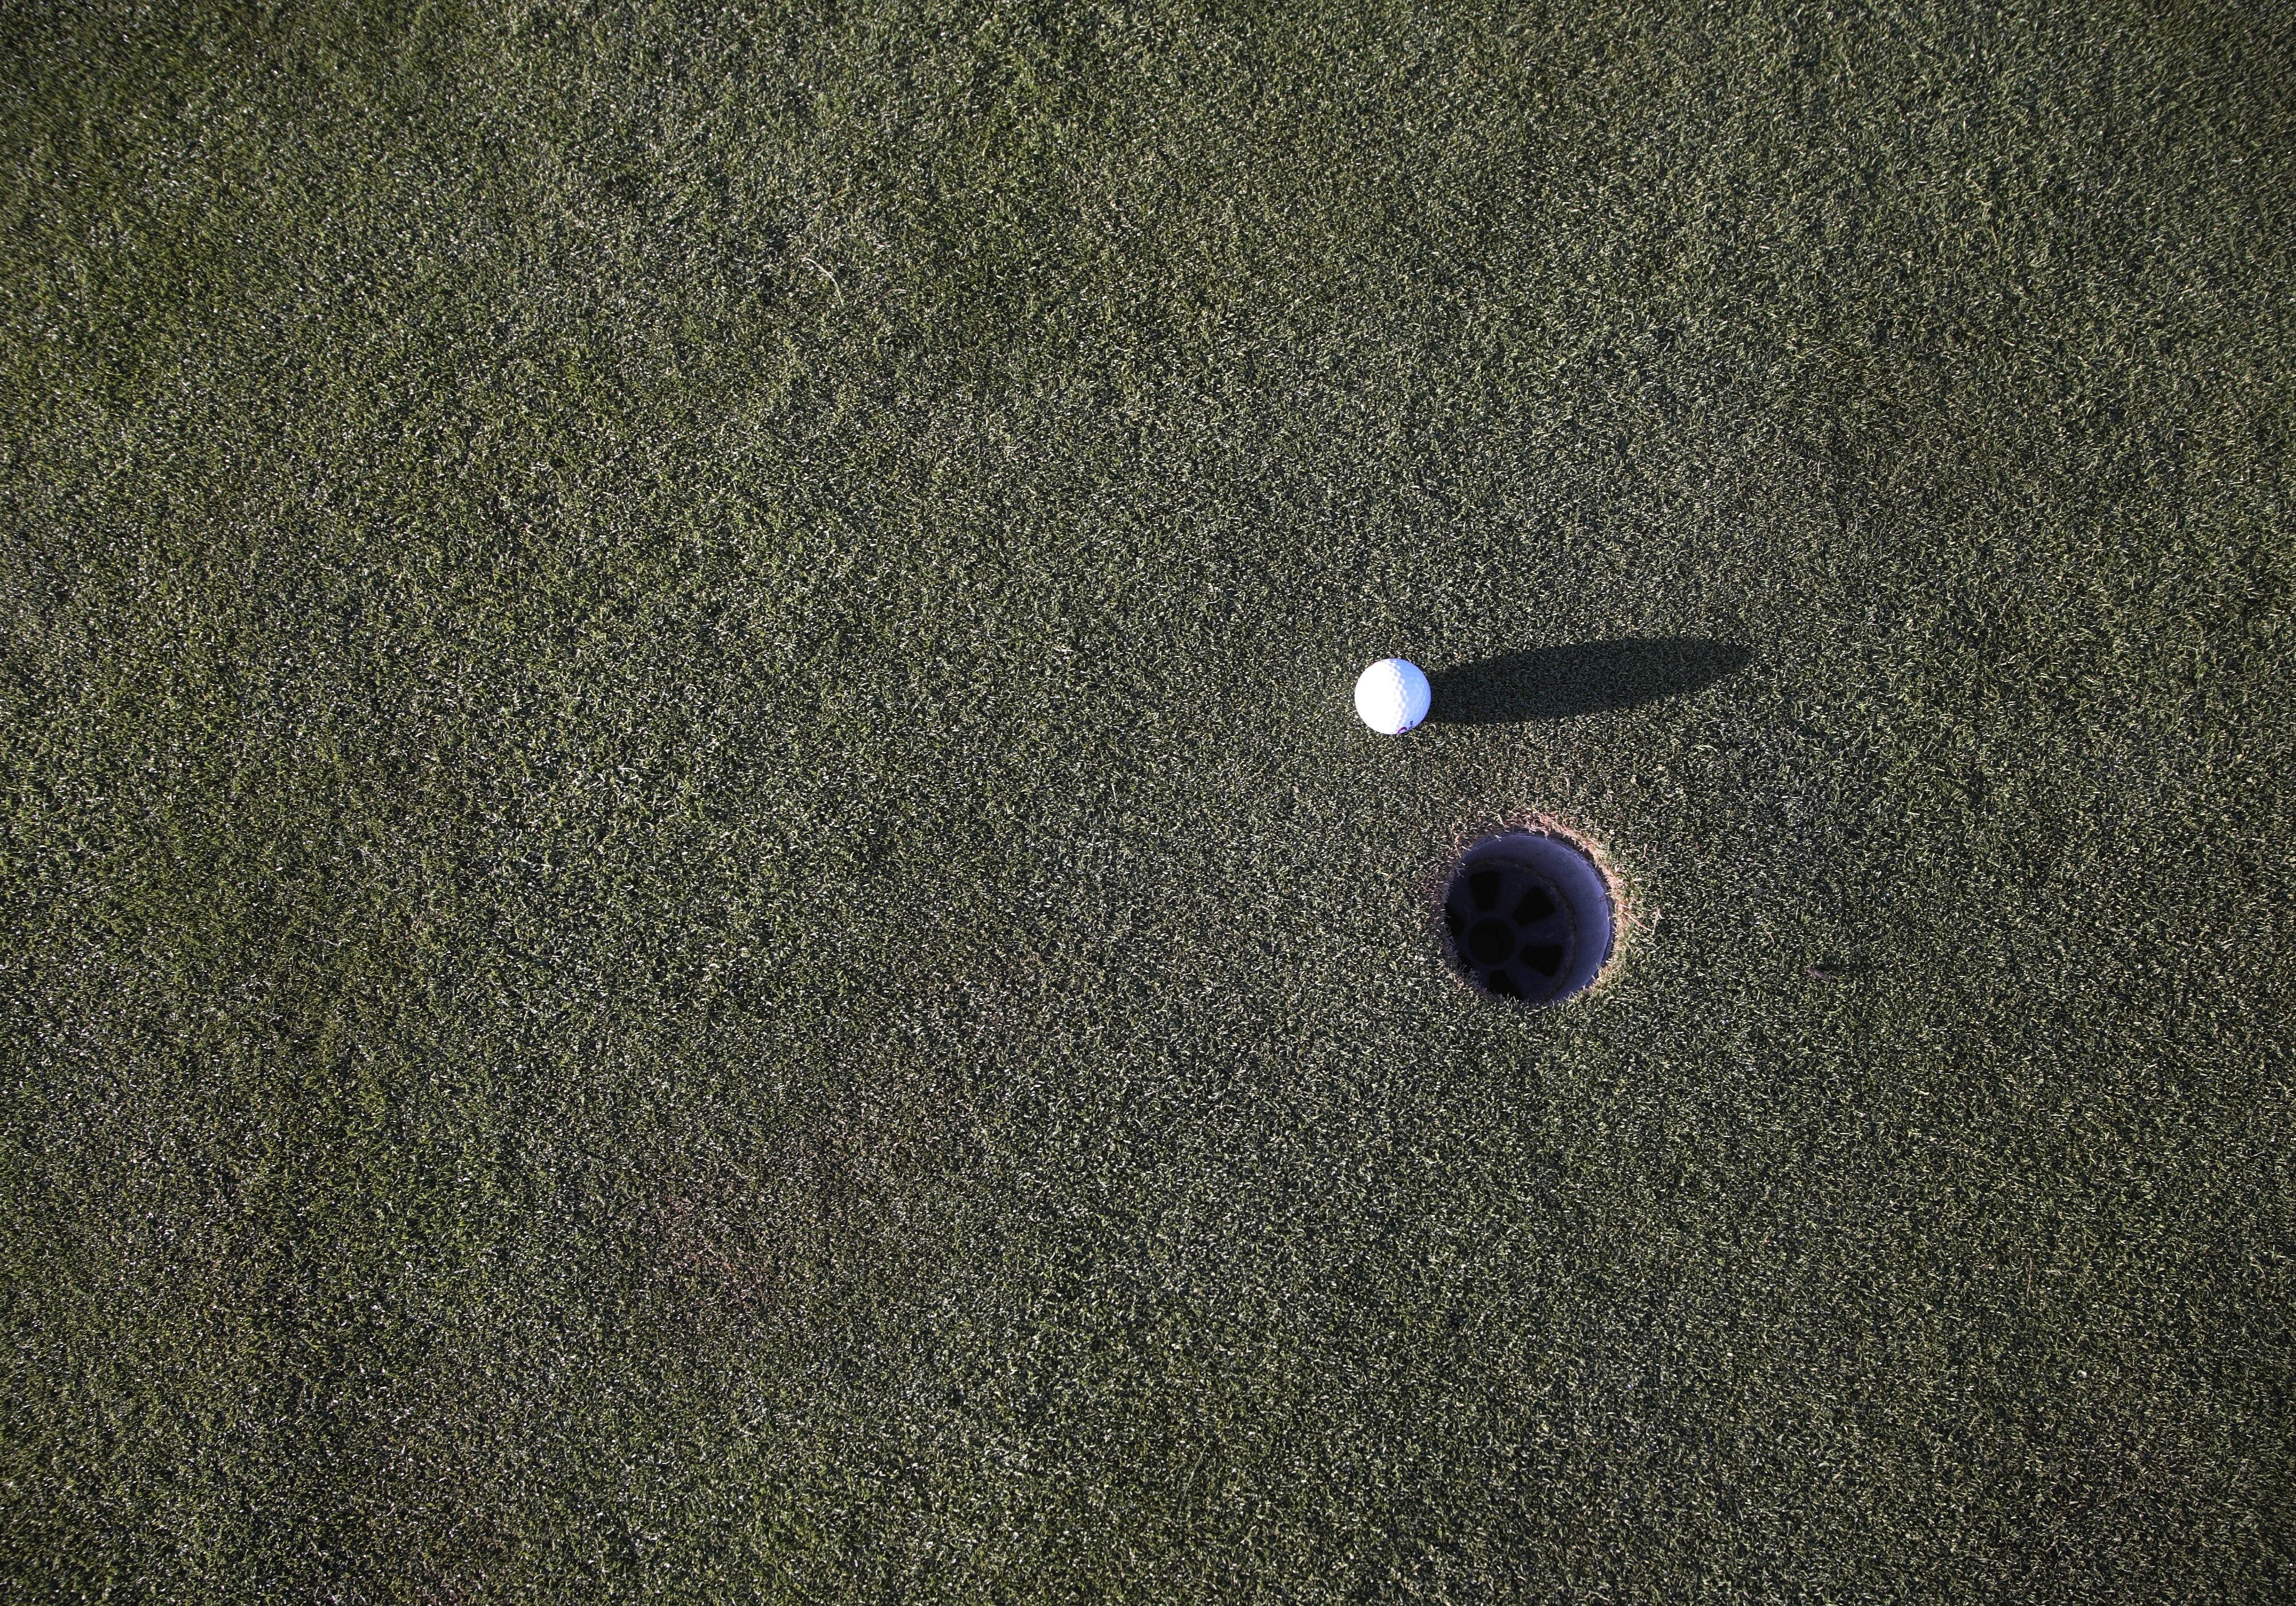 ball-golf-golf-ball-97768